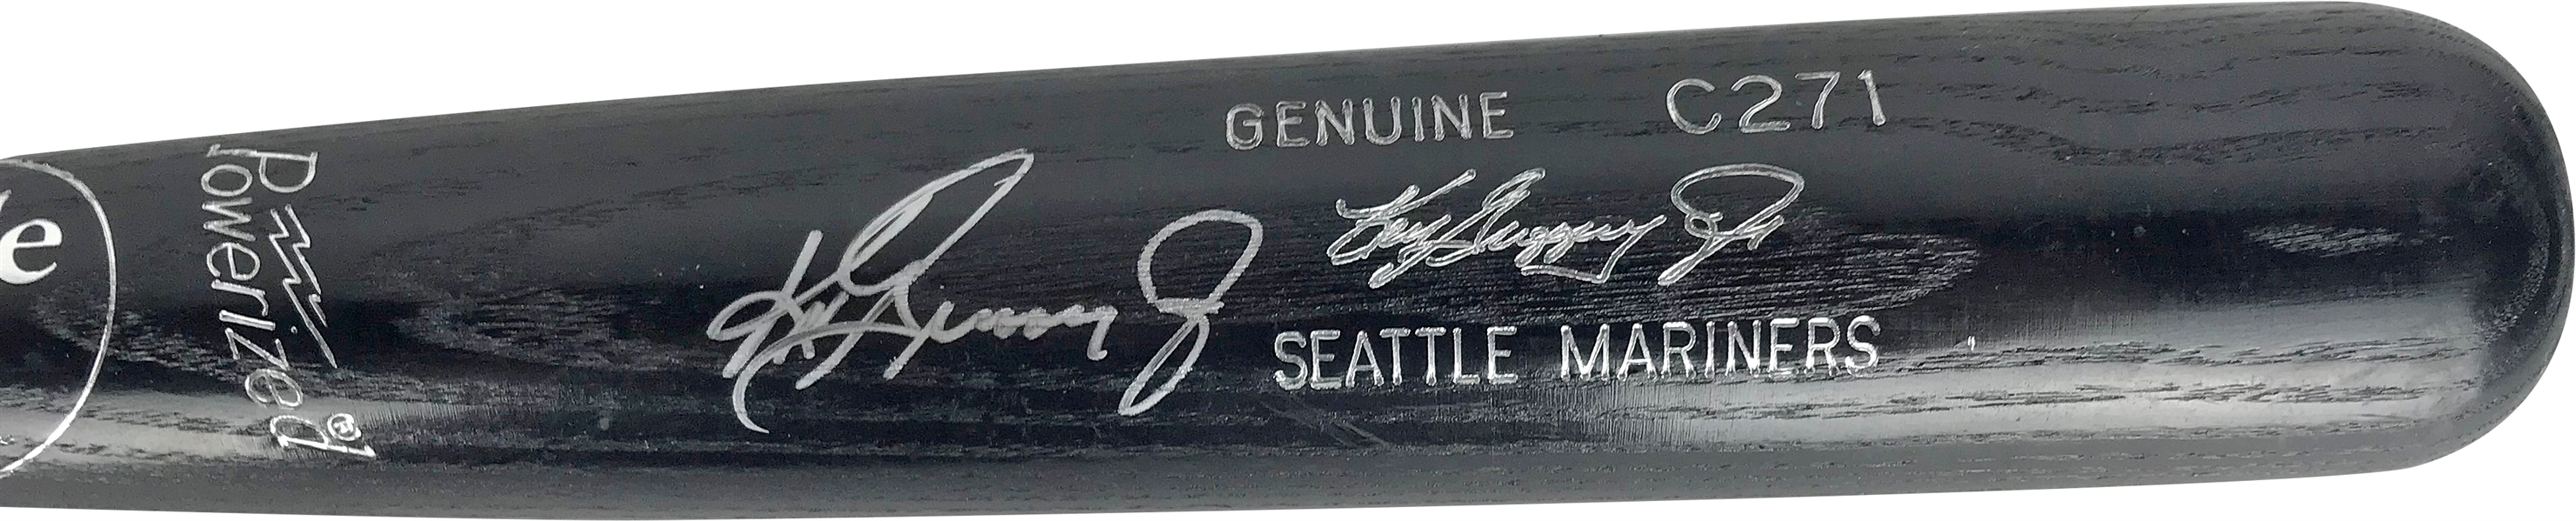 Ken Griffey Jr. Signed Personal Model Baseball Bat (Beckett/BAS)